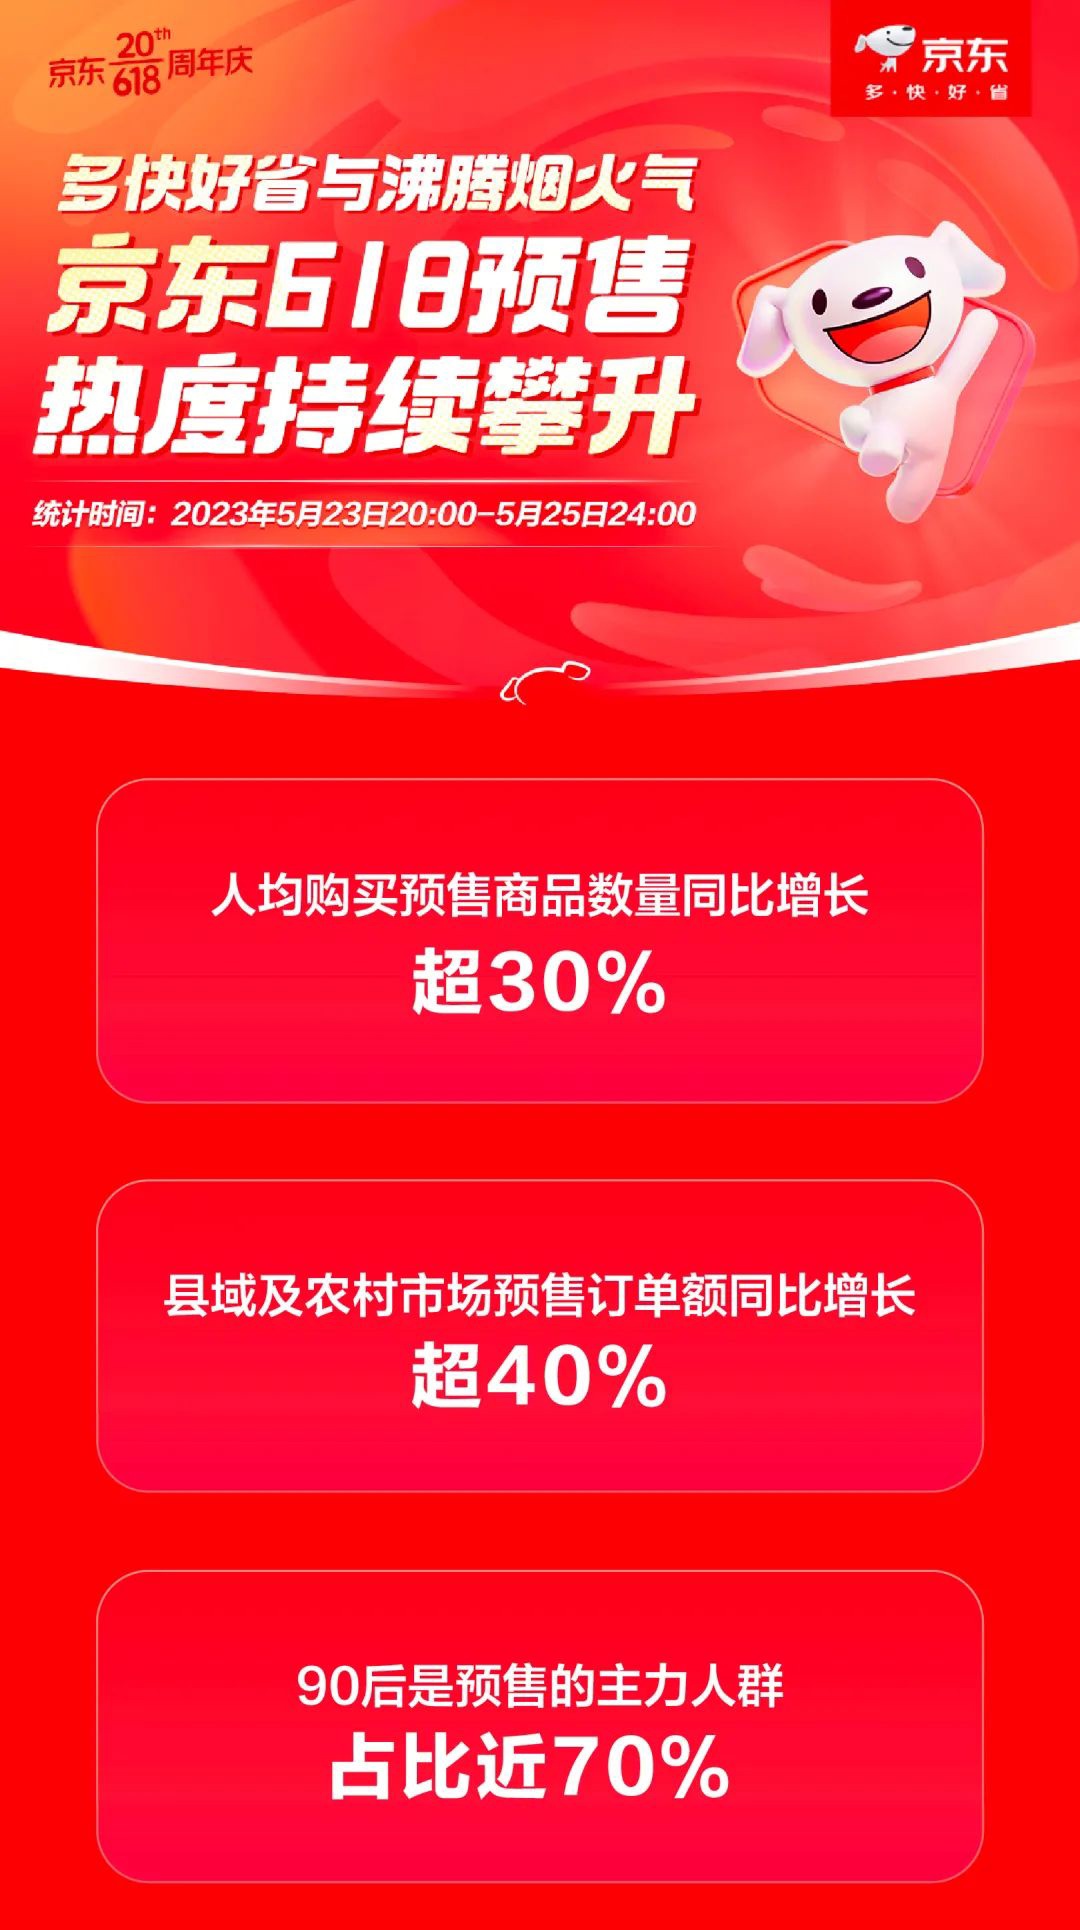 蓝狮娱乐注册：京东 618 预售数据：人均购买预售商品数量同比增长超 30%